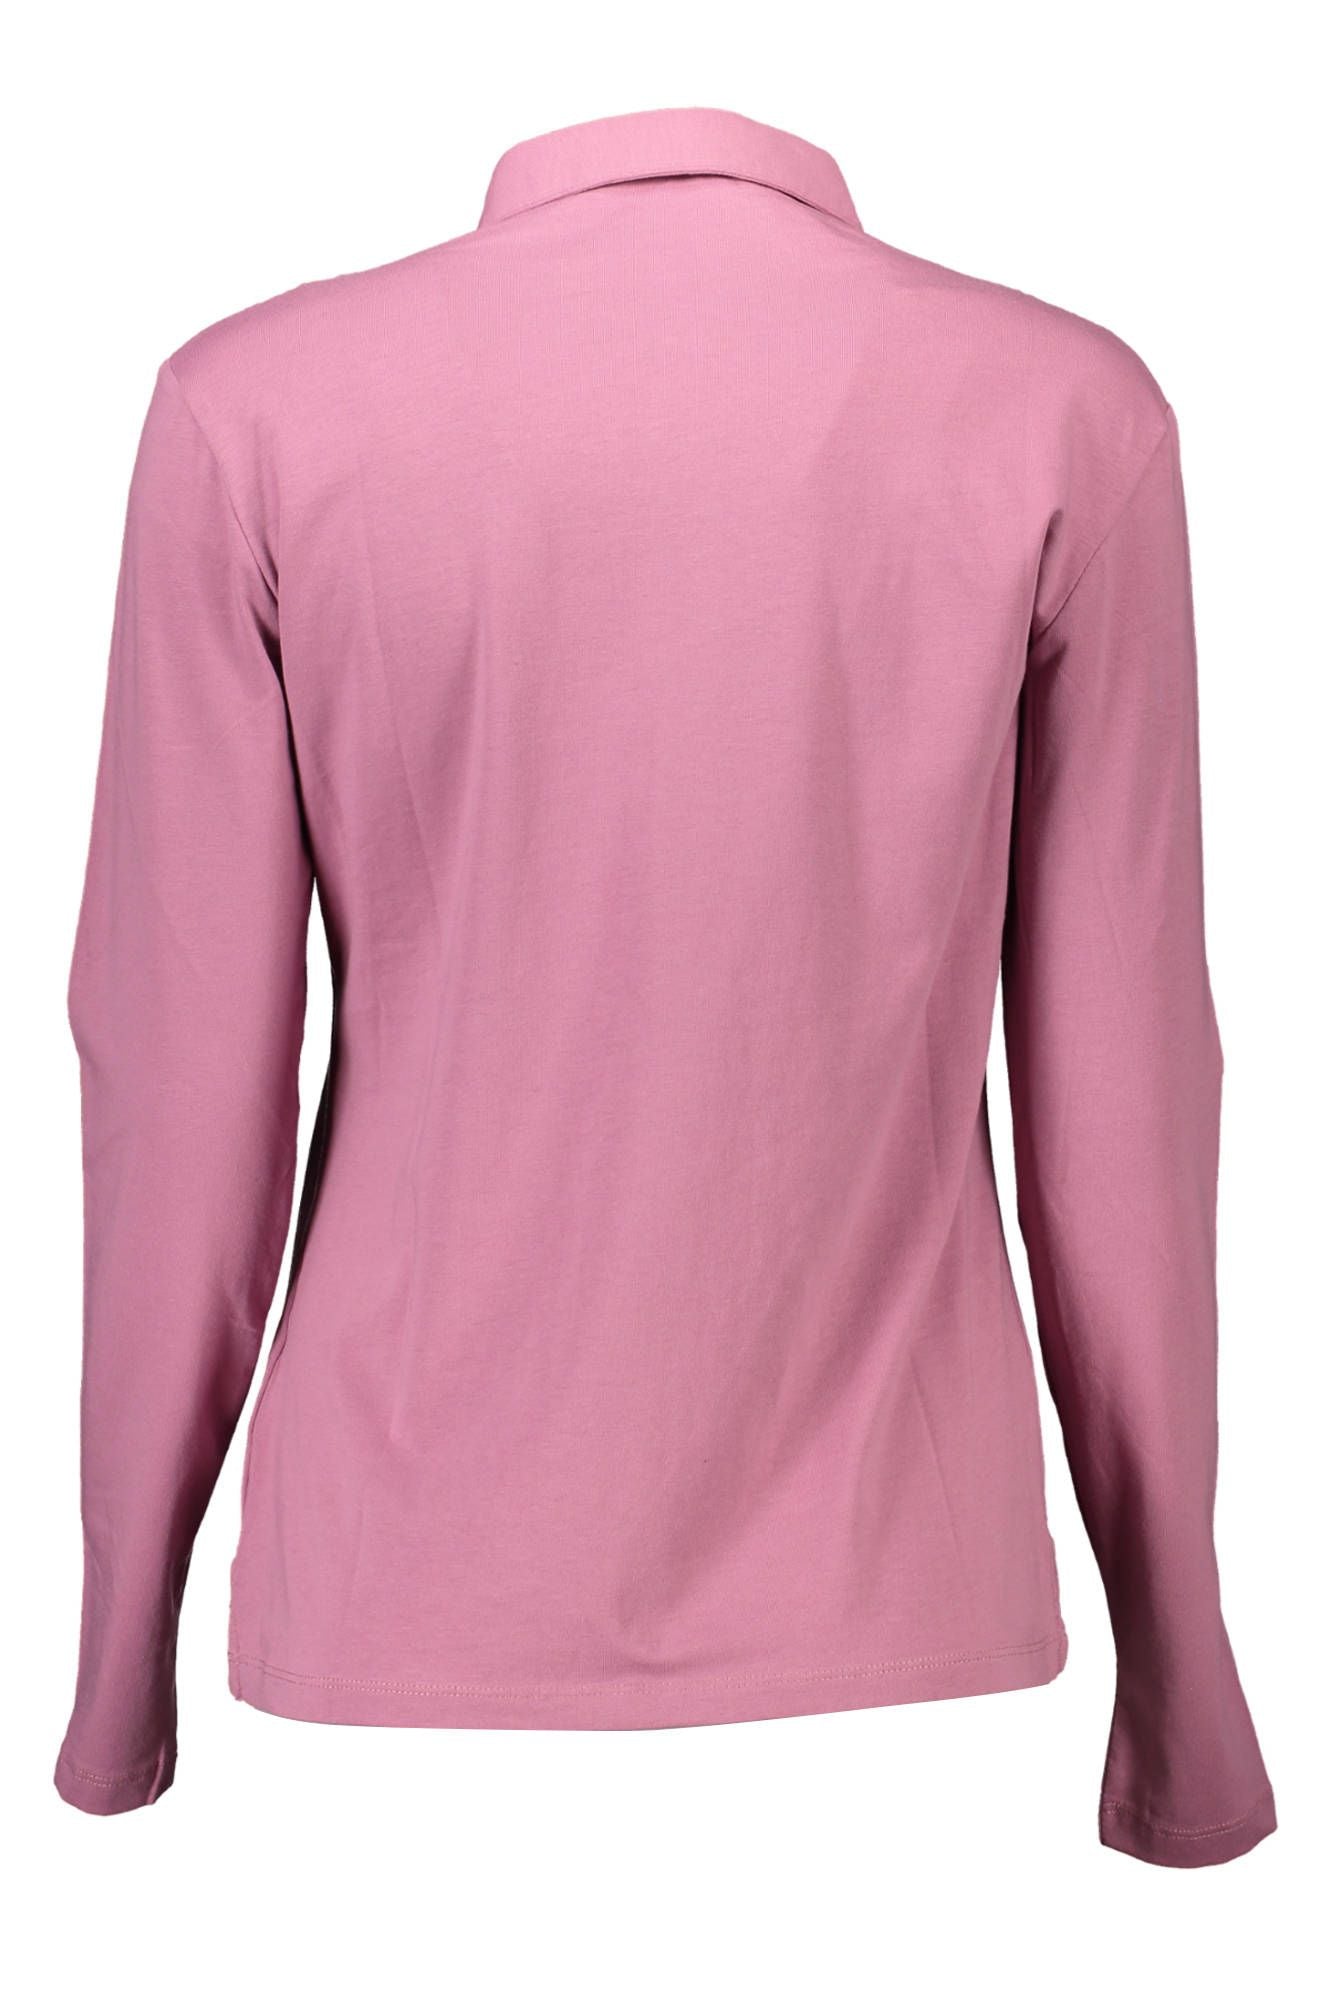 U.S. Polo Assn. Pink Cotton Polo Shirt